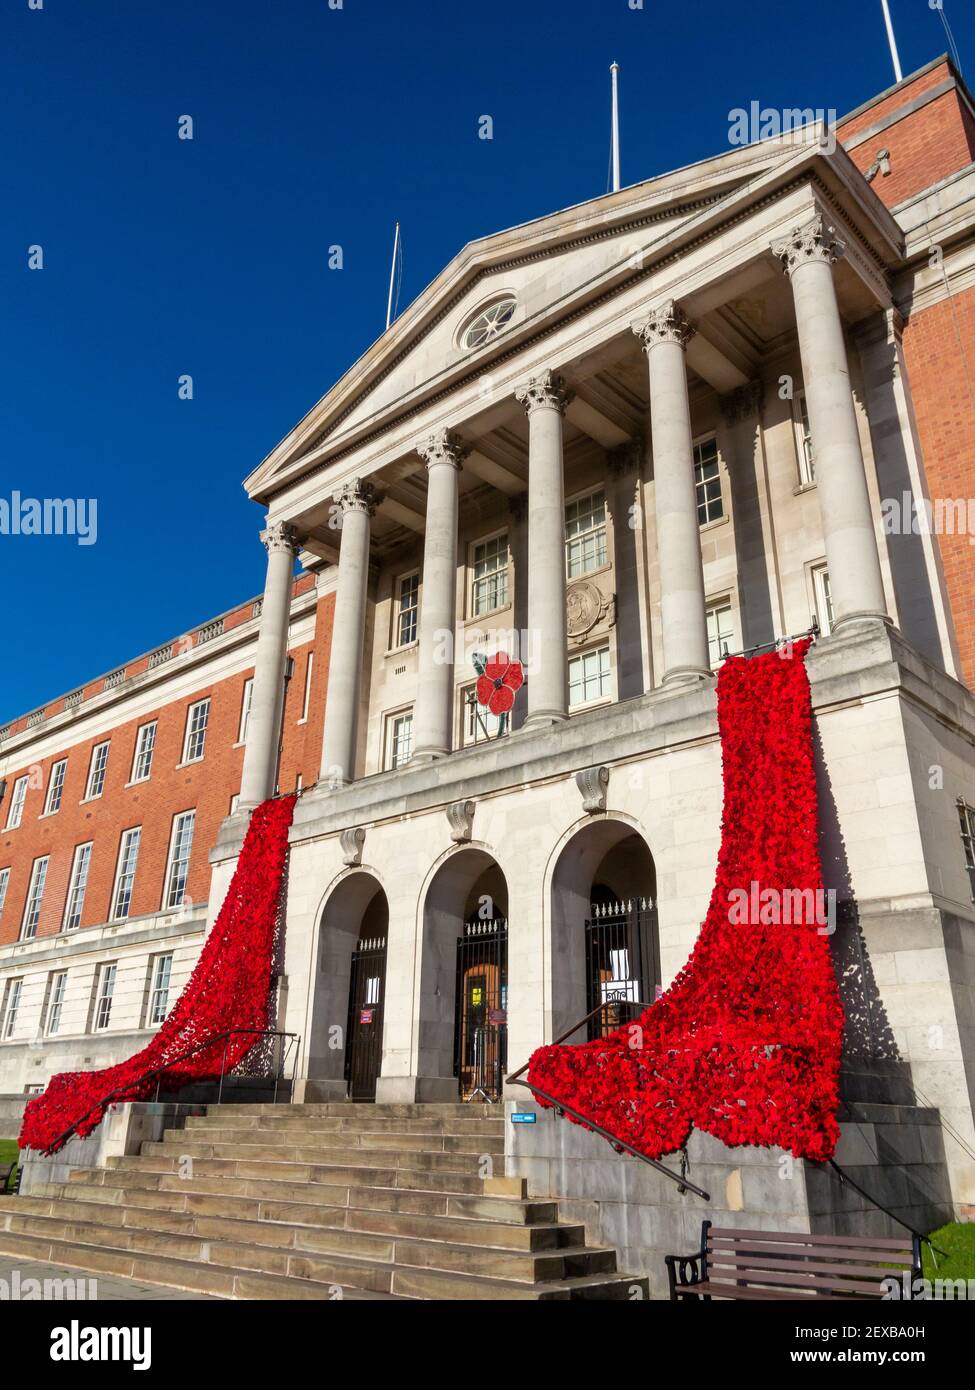 Chesterfield Town Hall Derbyshire England UK drapiert in roten Mohnblumen für Remembrance Day. Stockfoto